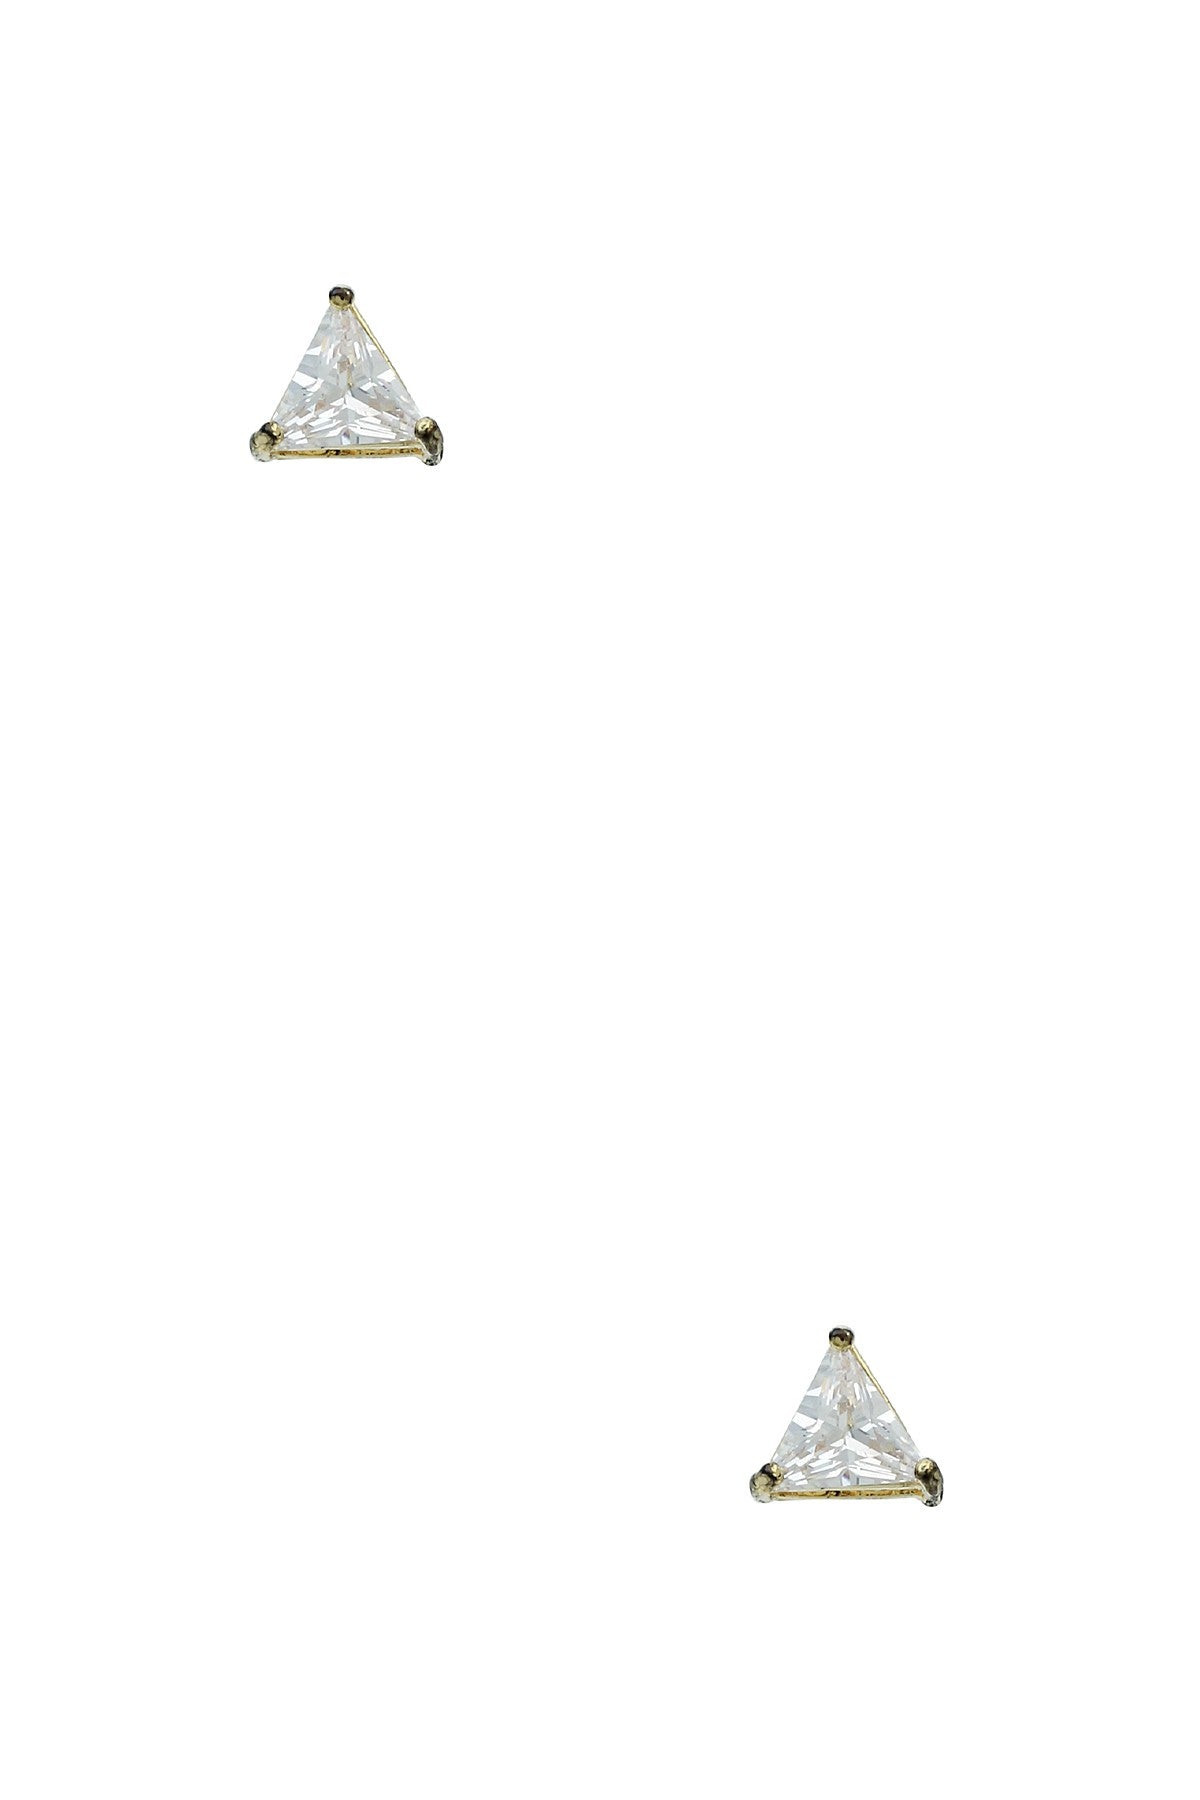 Jewelry- EARRINGS- triangle 7mm crystal stud earring